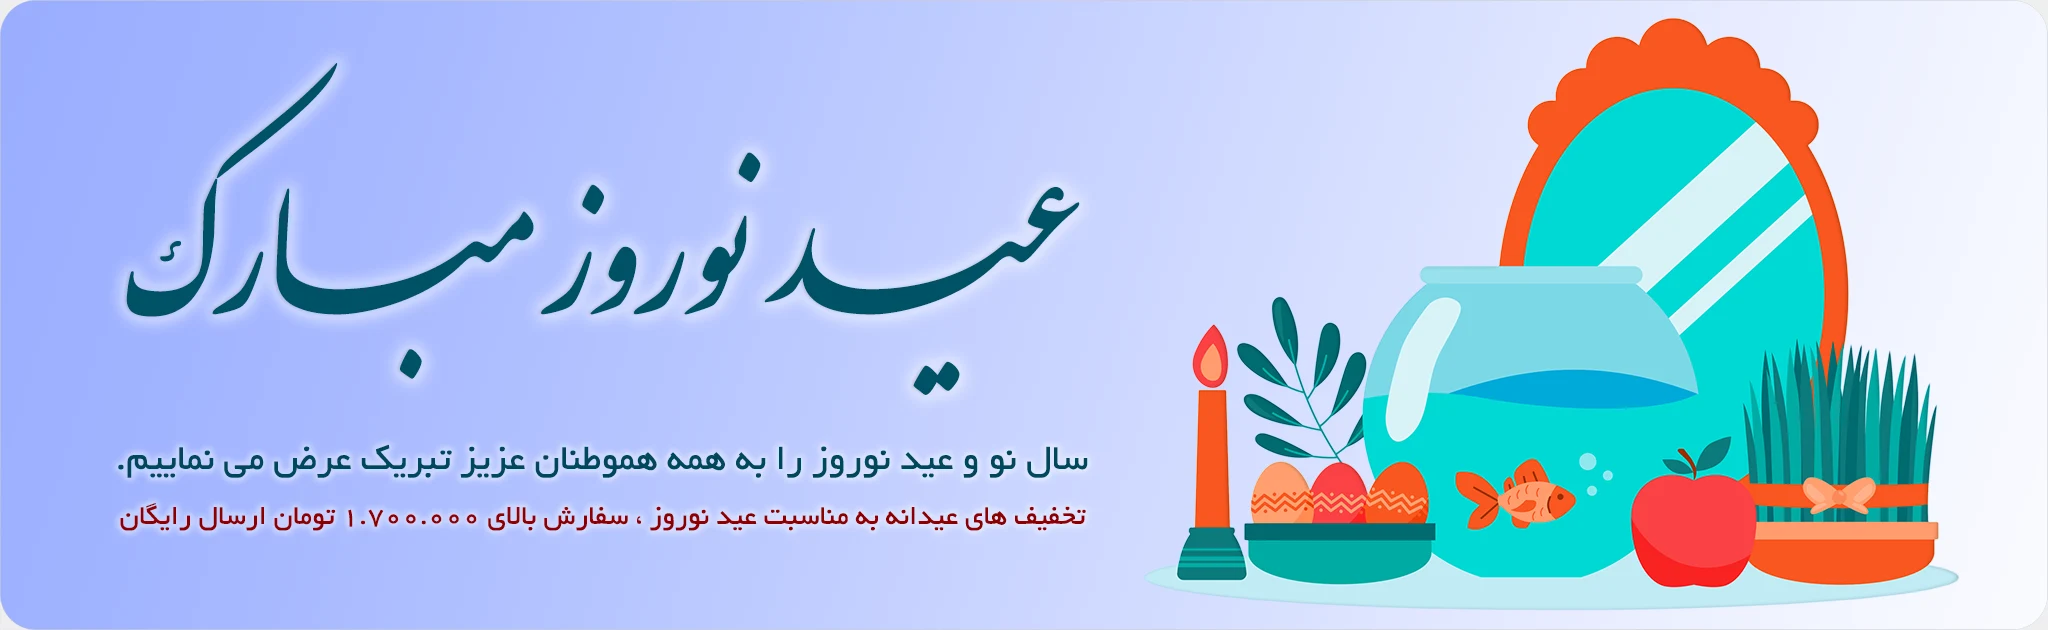 هدیه عید نوروز 1403 - فروشگاه صنایع دستی آرین هنر